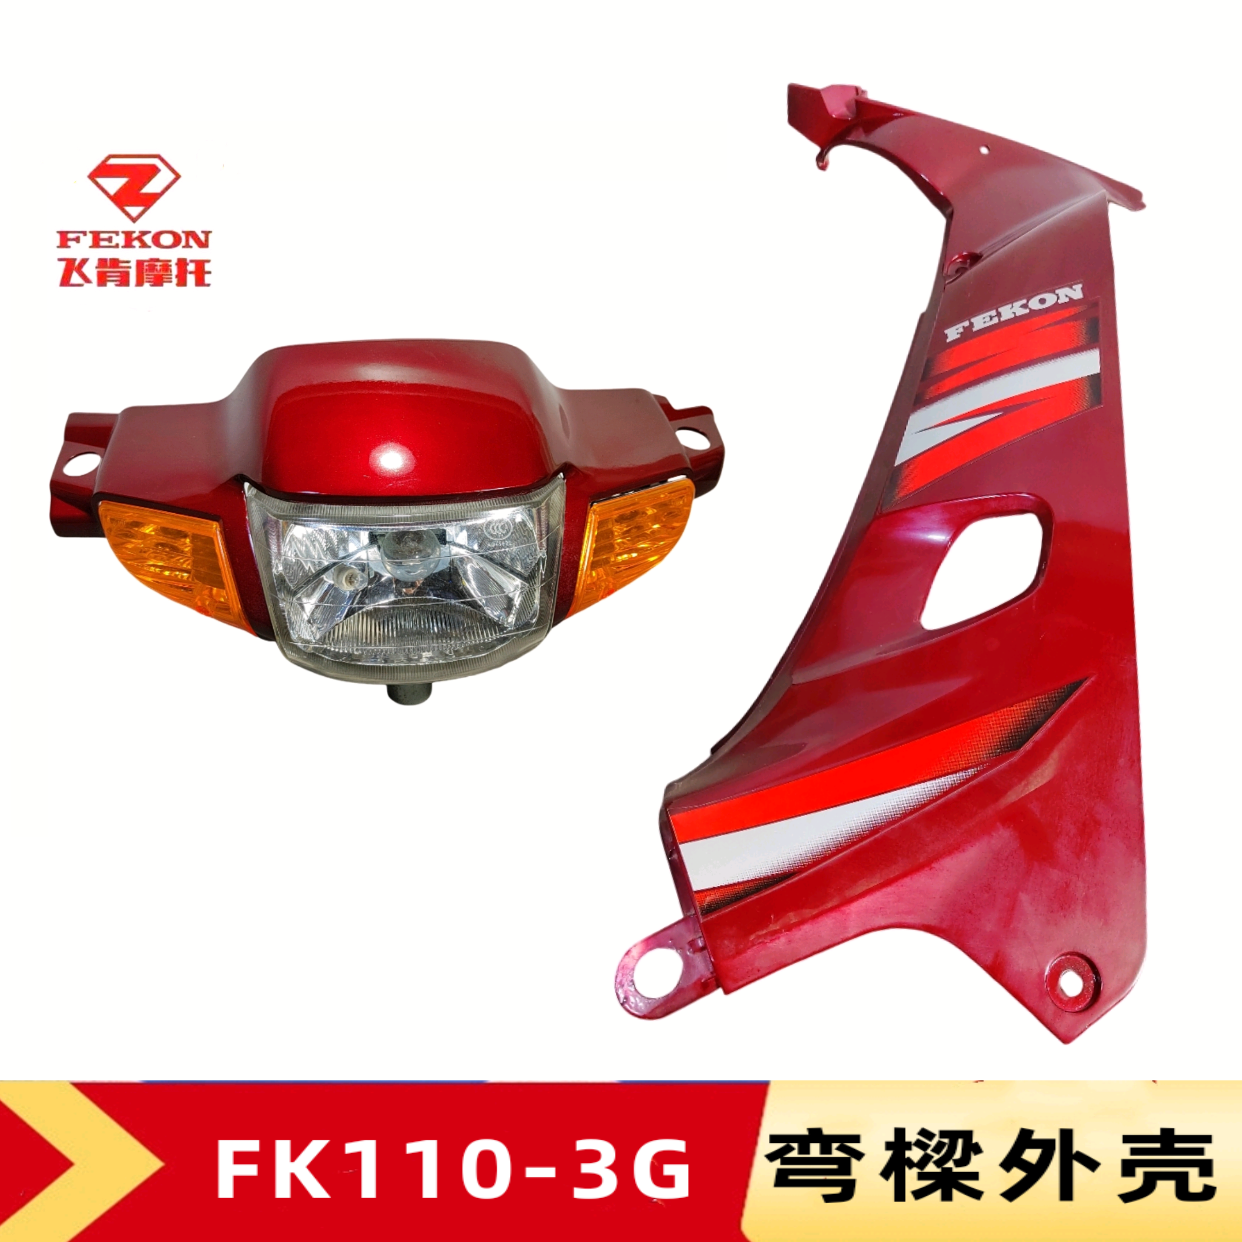 飞肯摩托车FK110-3G-3A原厂弯樑女装车大灯头罩挡风板挡泥板外壳